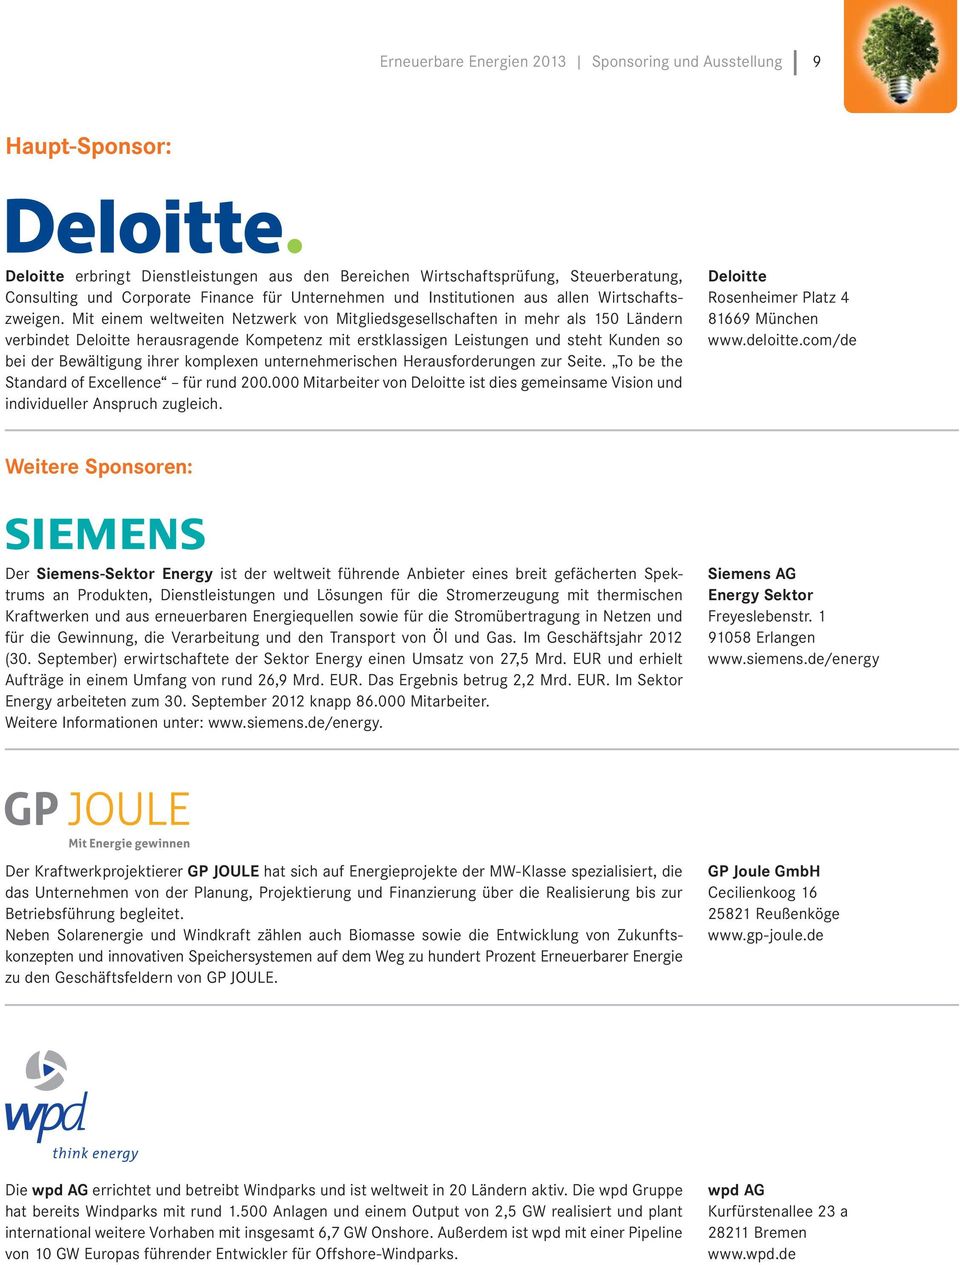 Mit einem weltweiten Netzwerk von Mitgliedsgesellschaften in mehr als 150 Ländern verbindet Deloitte herausragende Kompetenz mit erstklassigen Leistungen und steht Kunden so bei der Bewältigung ihrer